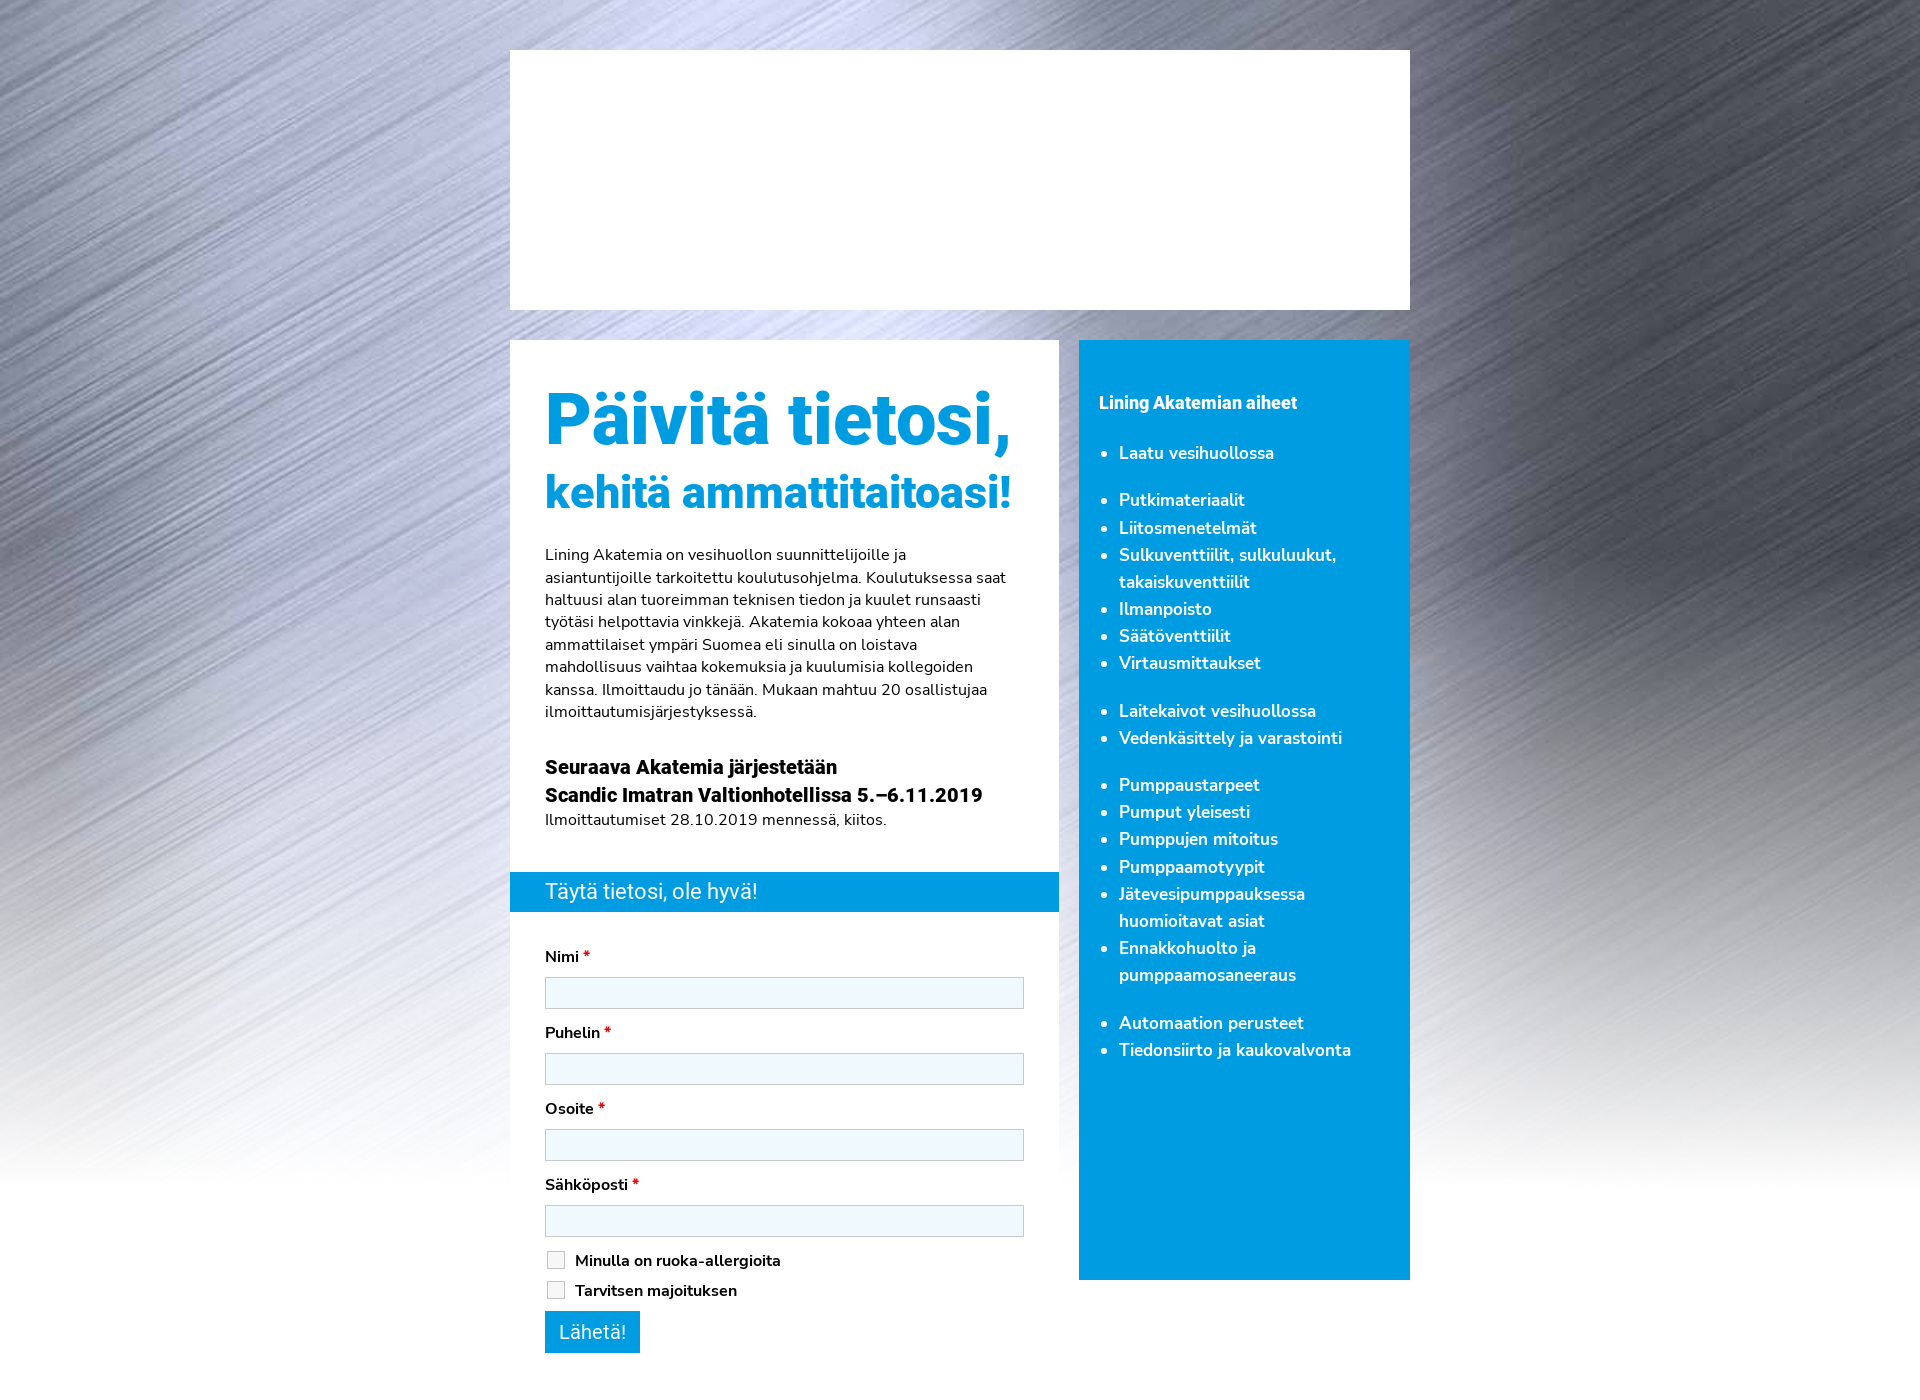 Skärmdump för liningakatemia.fi